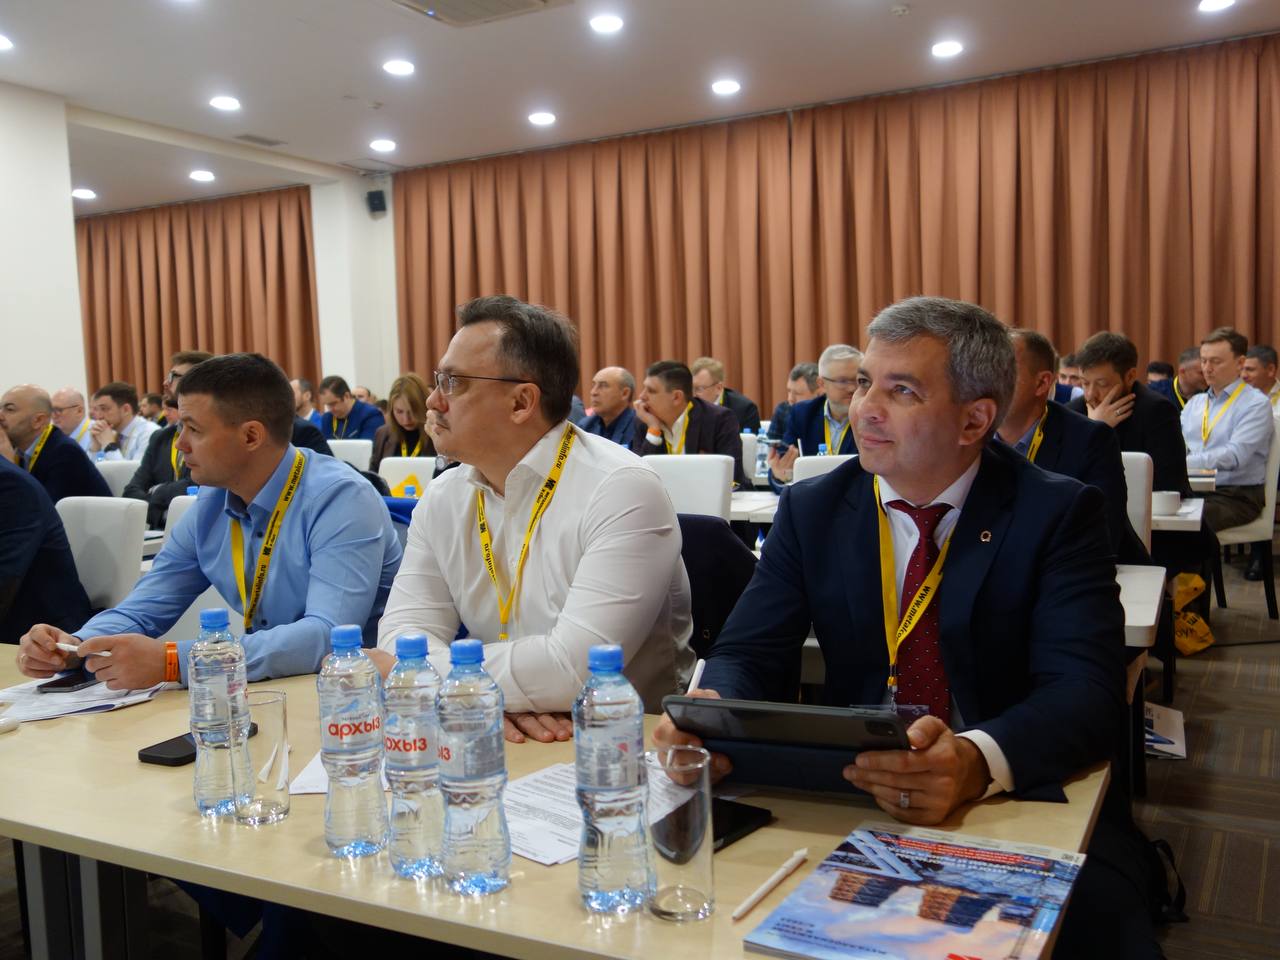 20-21 февраля в Сочи прошла Общероссийская конференция "Региональная металлоторговля России"